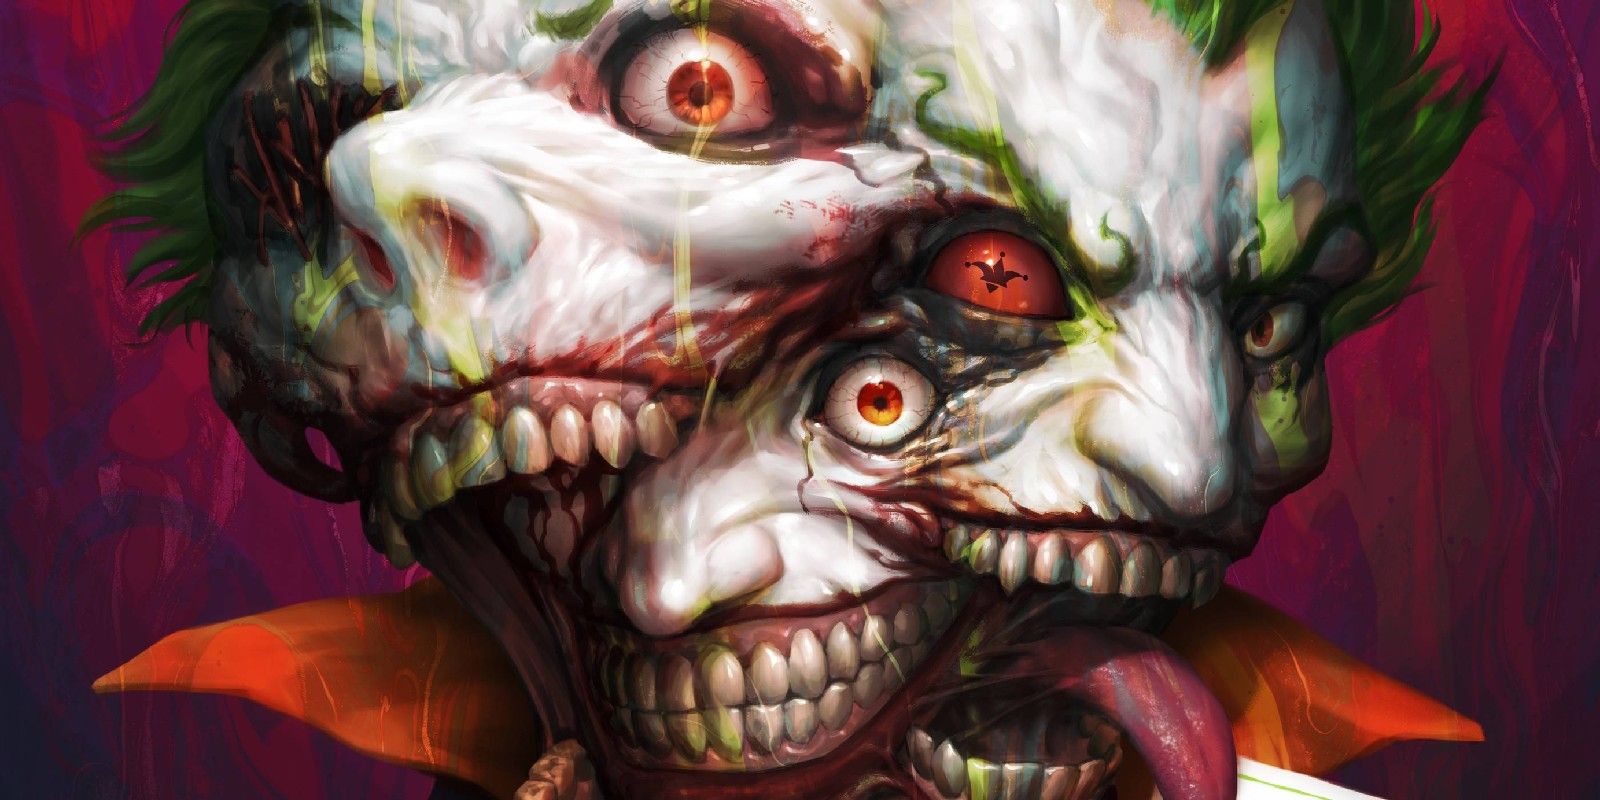 Joker with Three Interlocked Faces